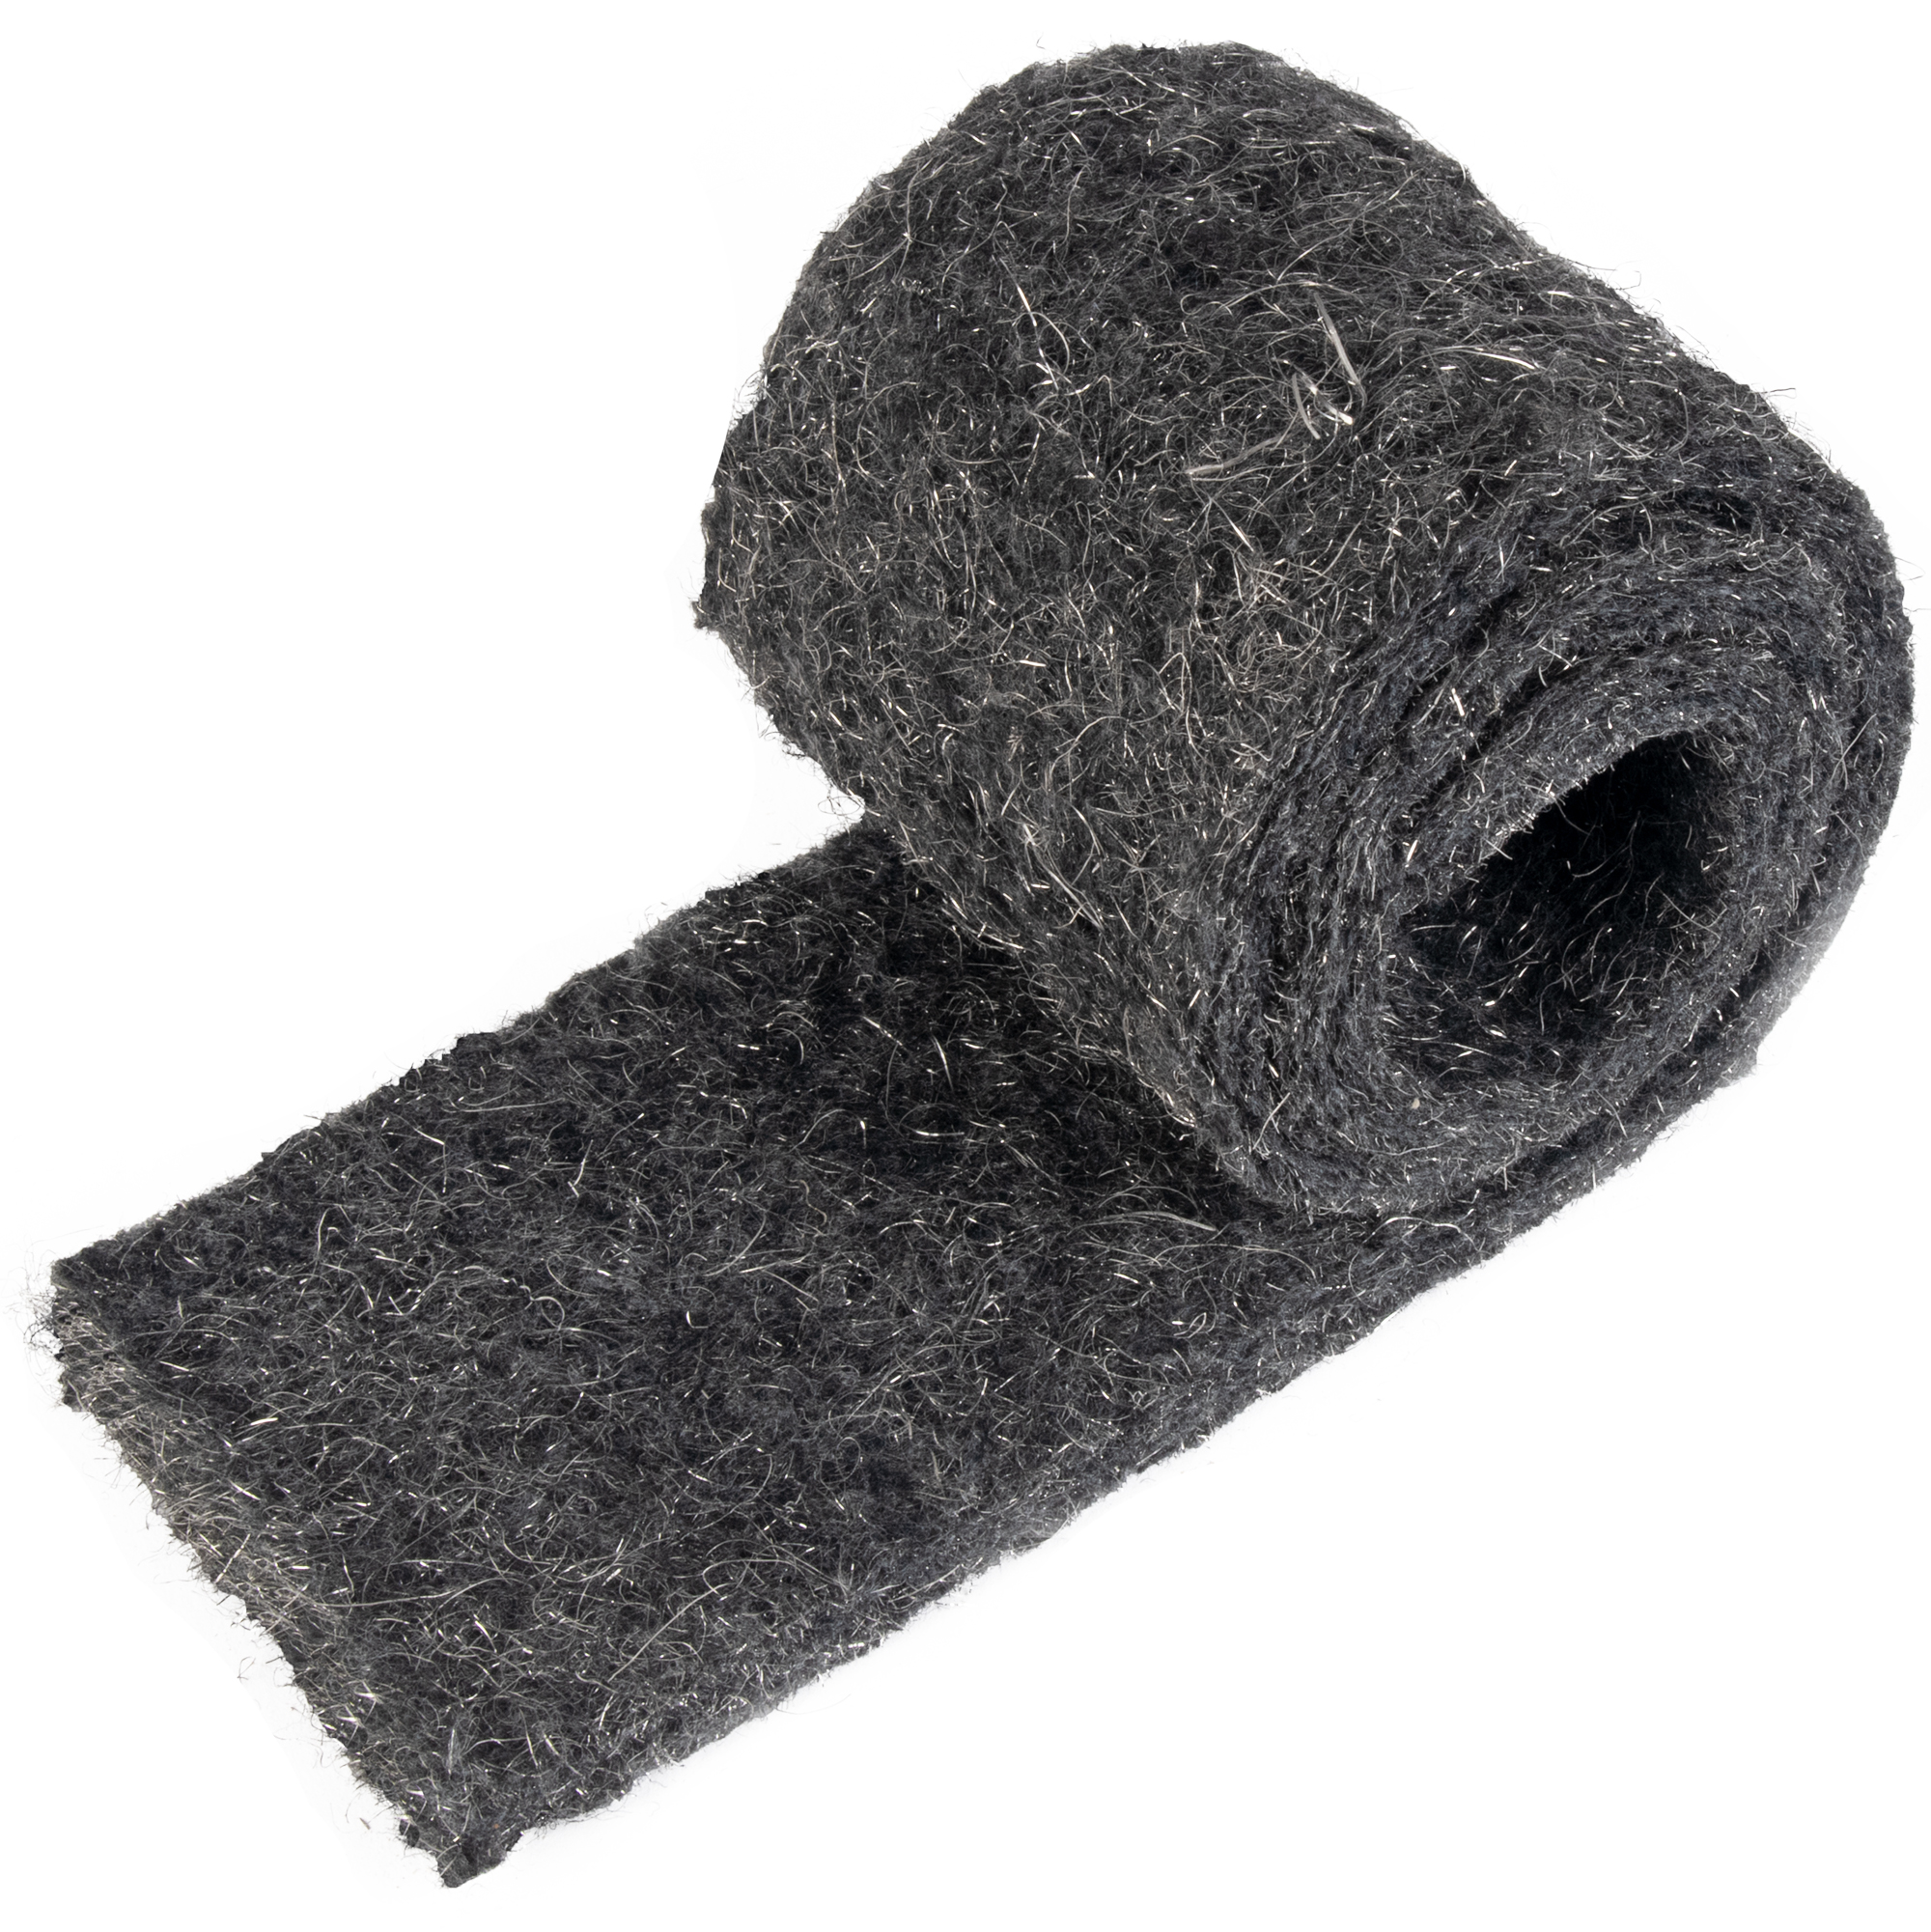 Souris en laine d'acier - 2 Pack 0000 Rodent Control Gaps Blocker Stainless  Coarse Wire Wool Fill Fabric Diy Kit, facile à utiliser Stop Rats et souris  Insect Pest P